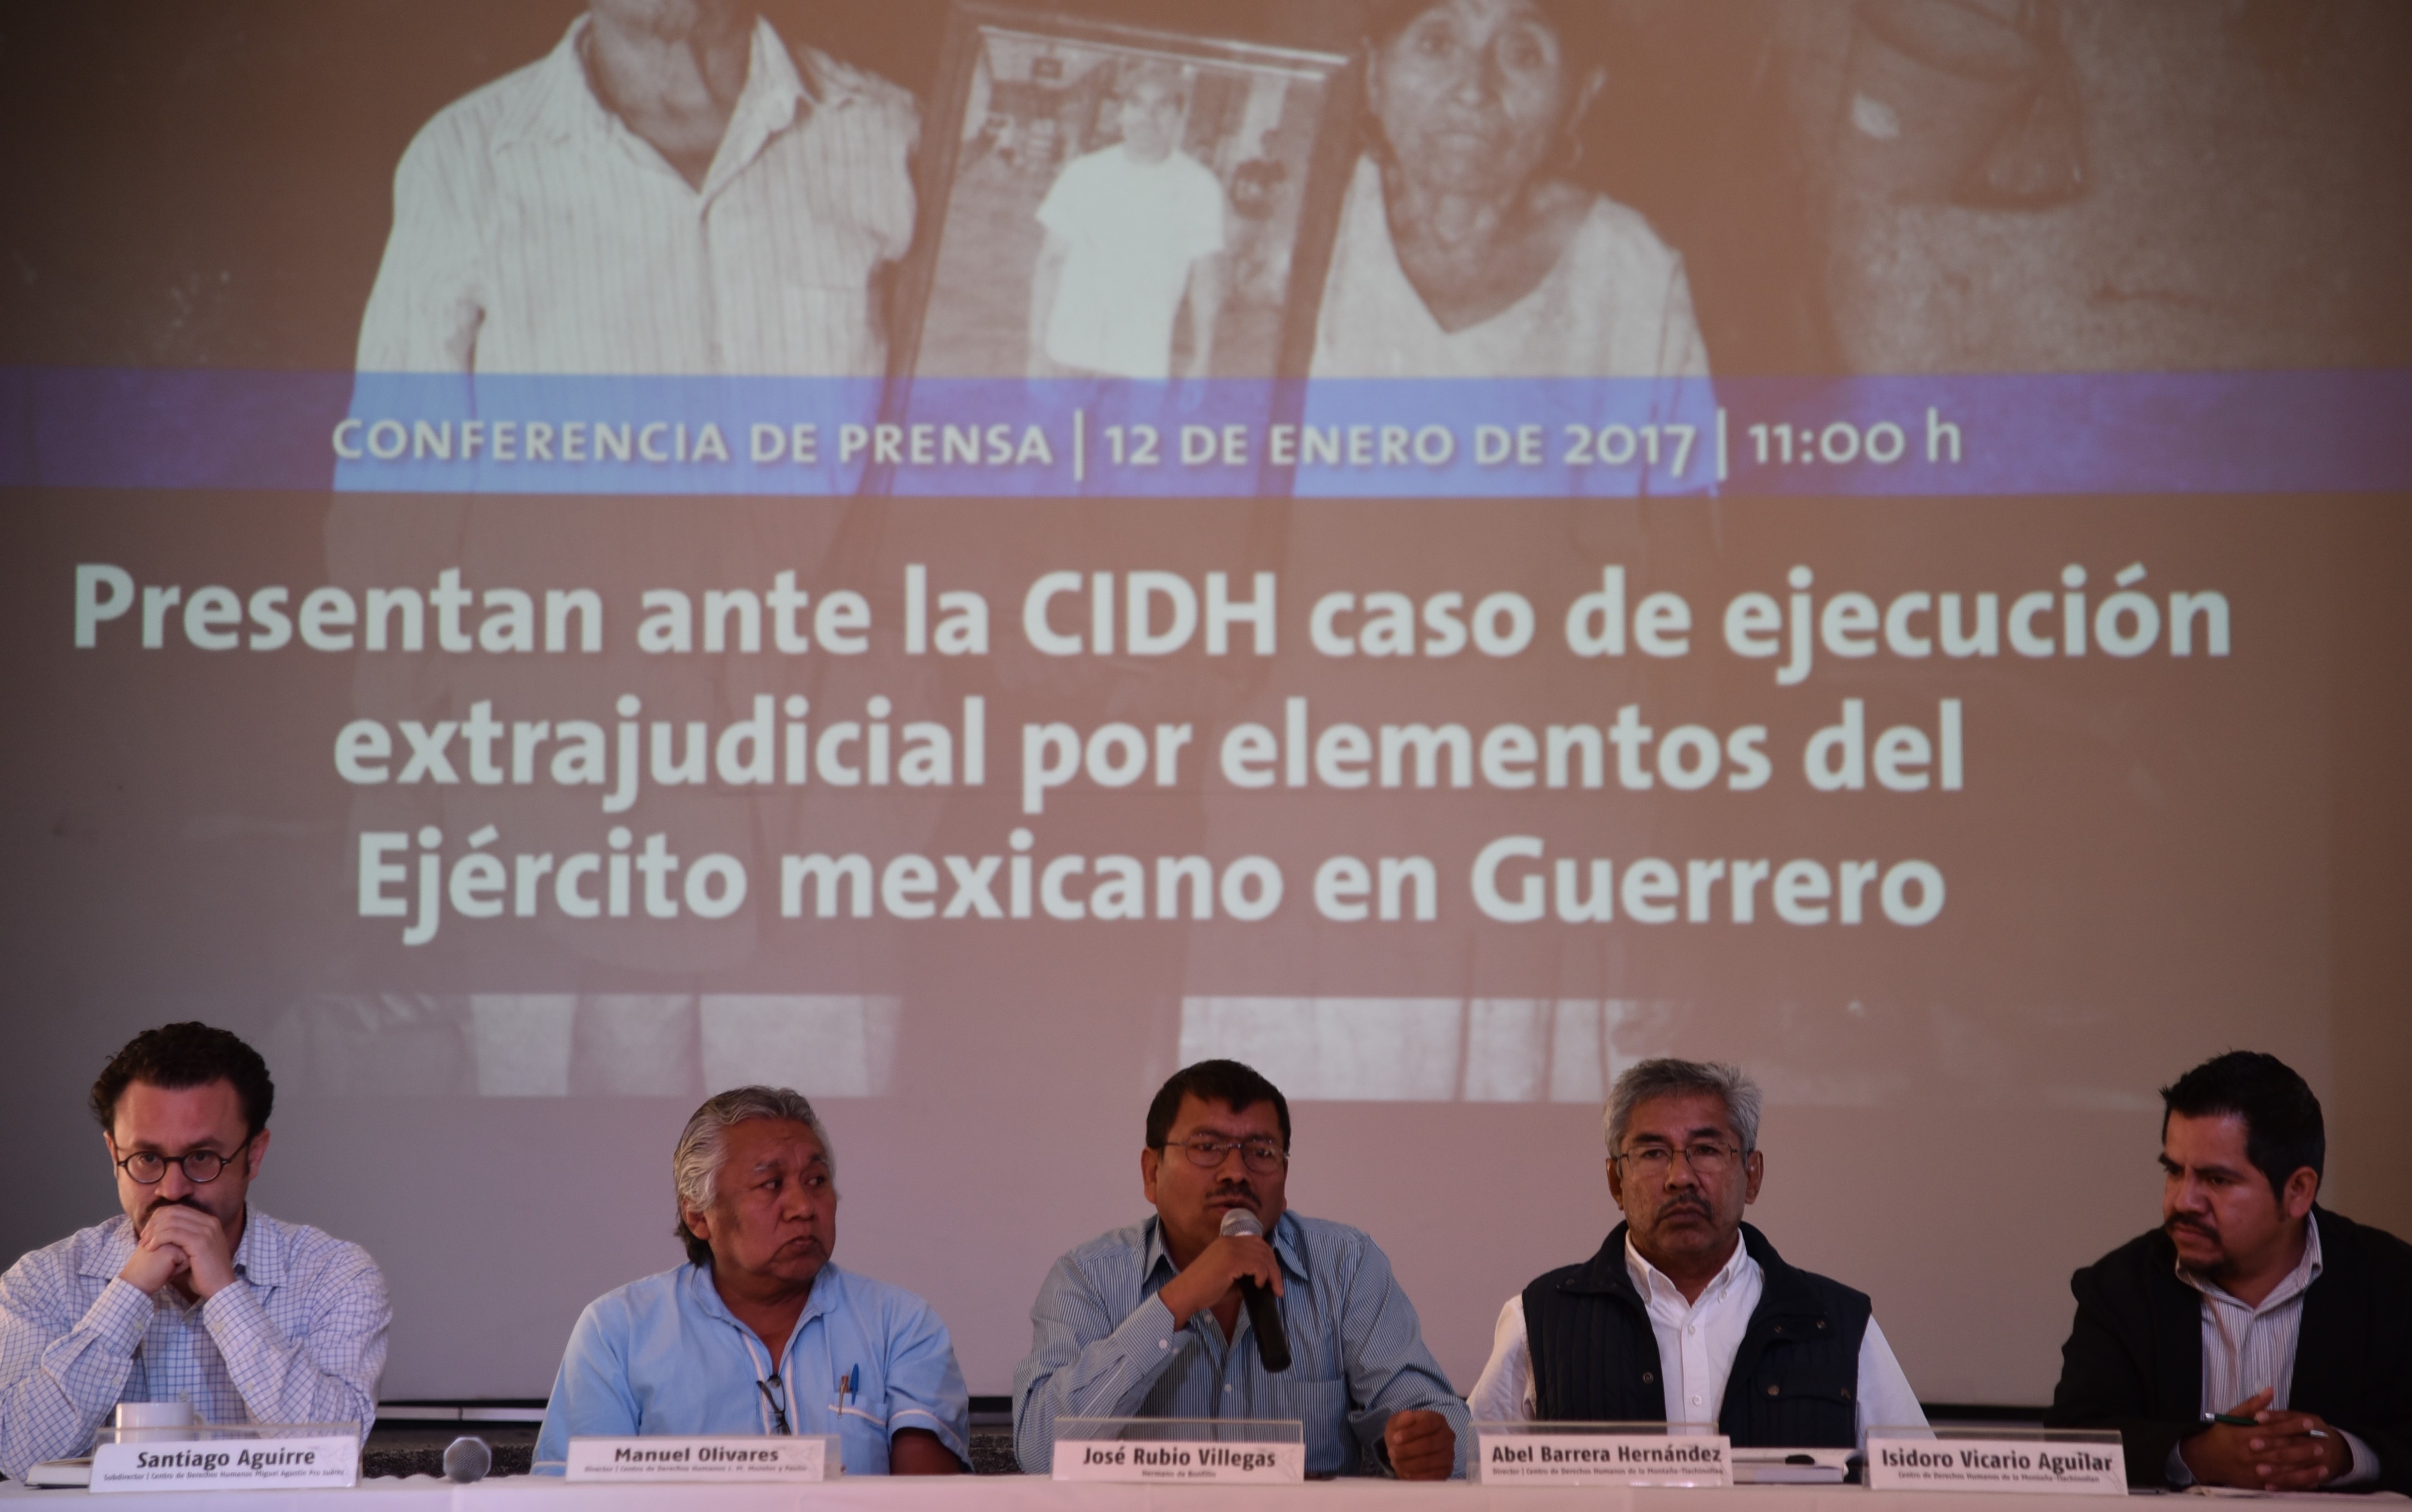 Presentan ante la CIDH caso de indígena de Guerrero ejecutado por militares